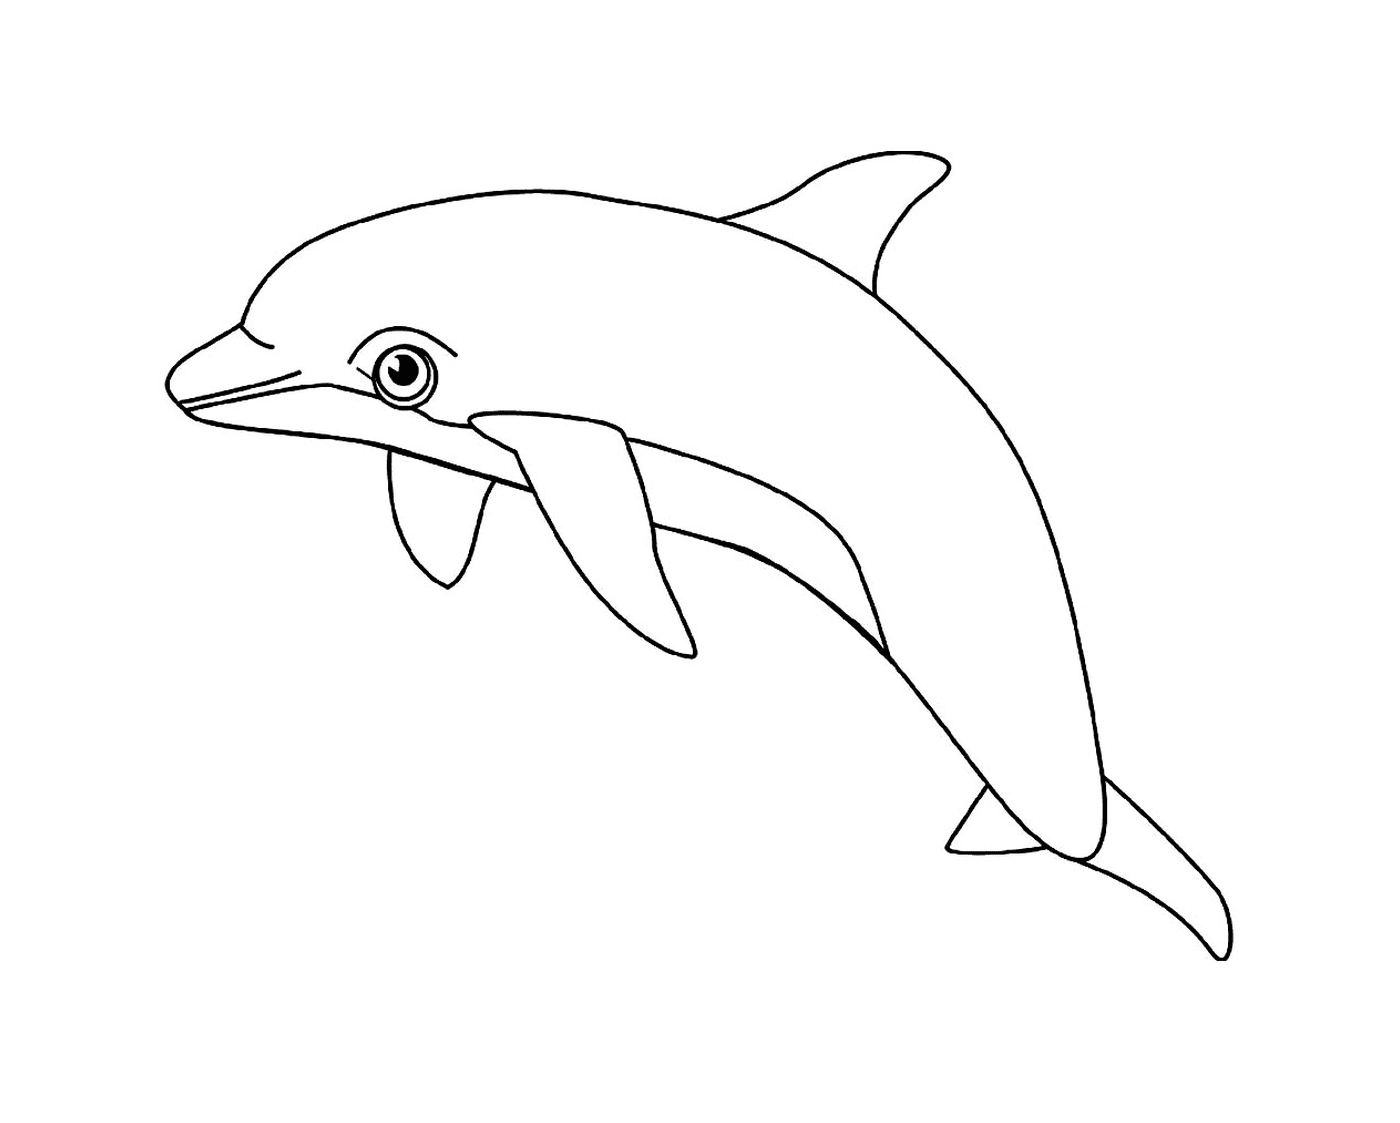  An aquatic animal: the dolphin 